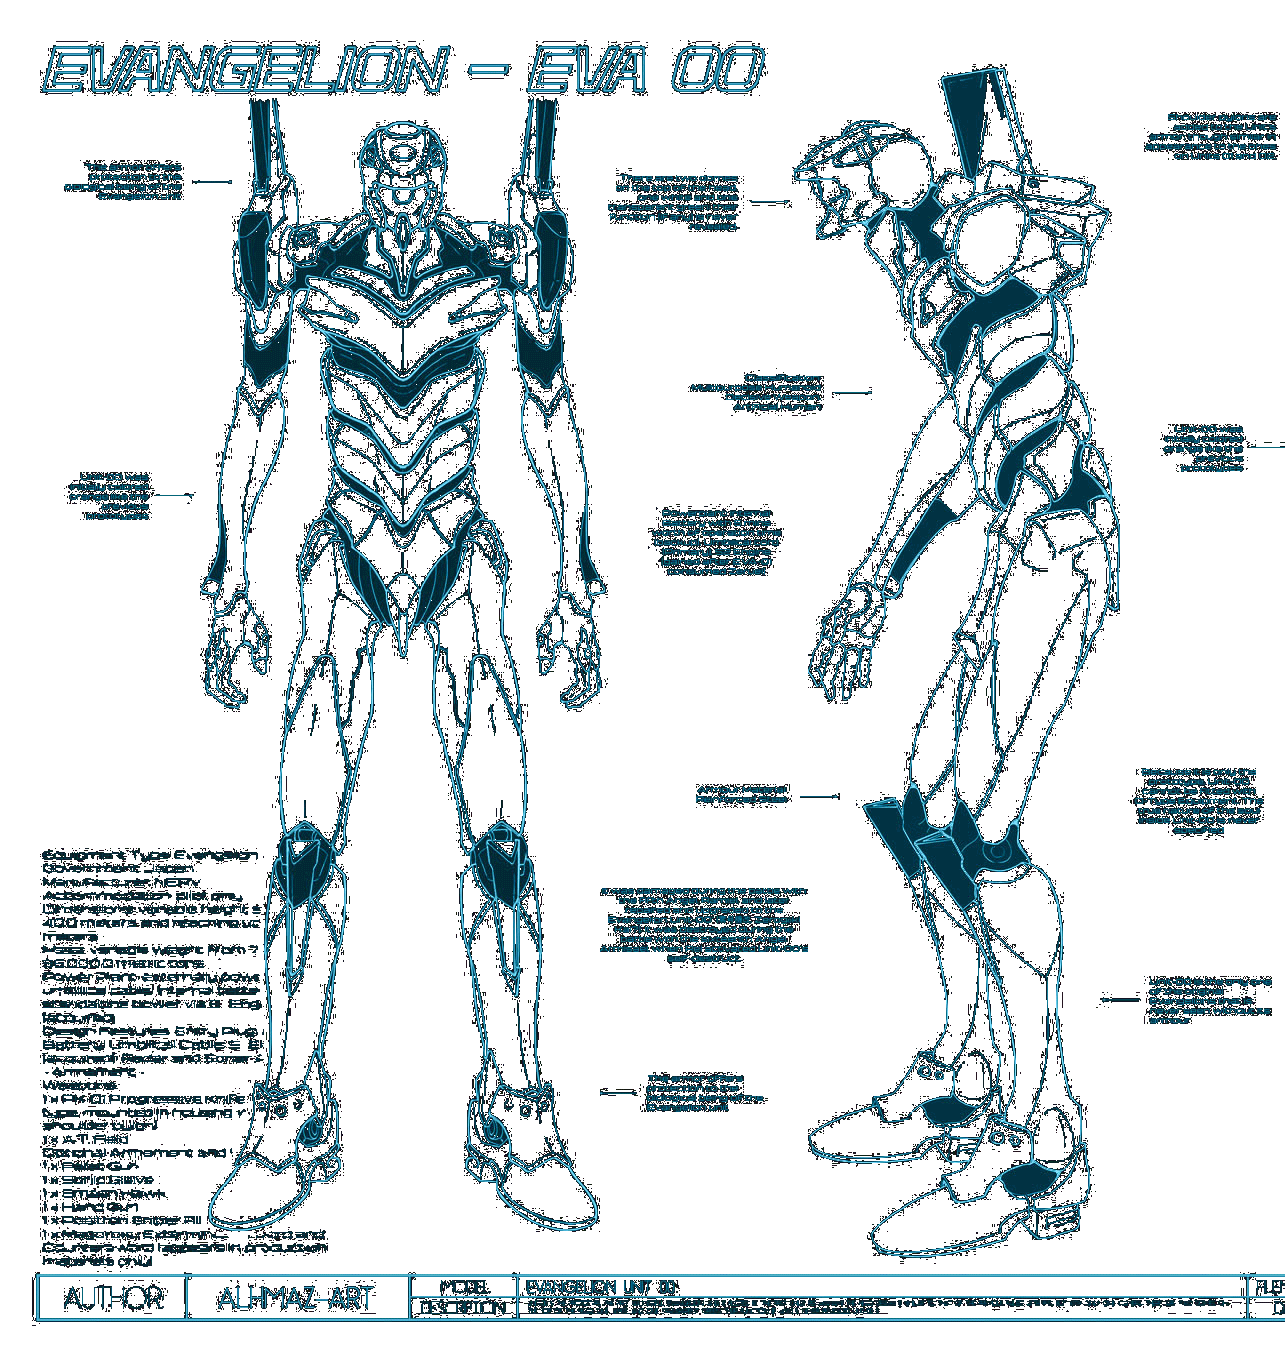 Unit00 blueprint (original figure made by Alhmaz-art)